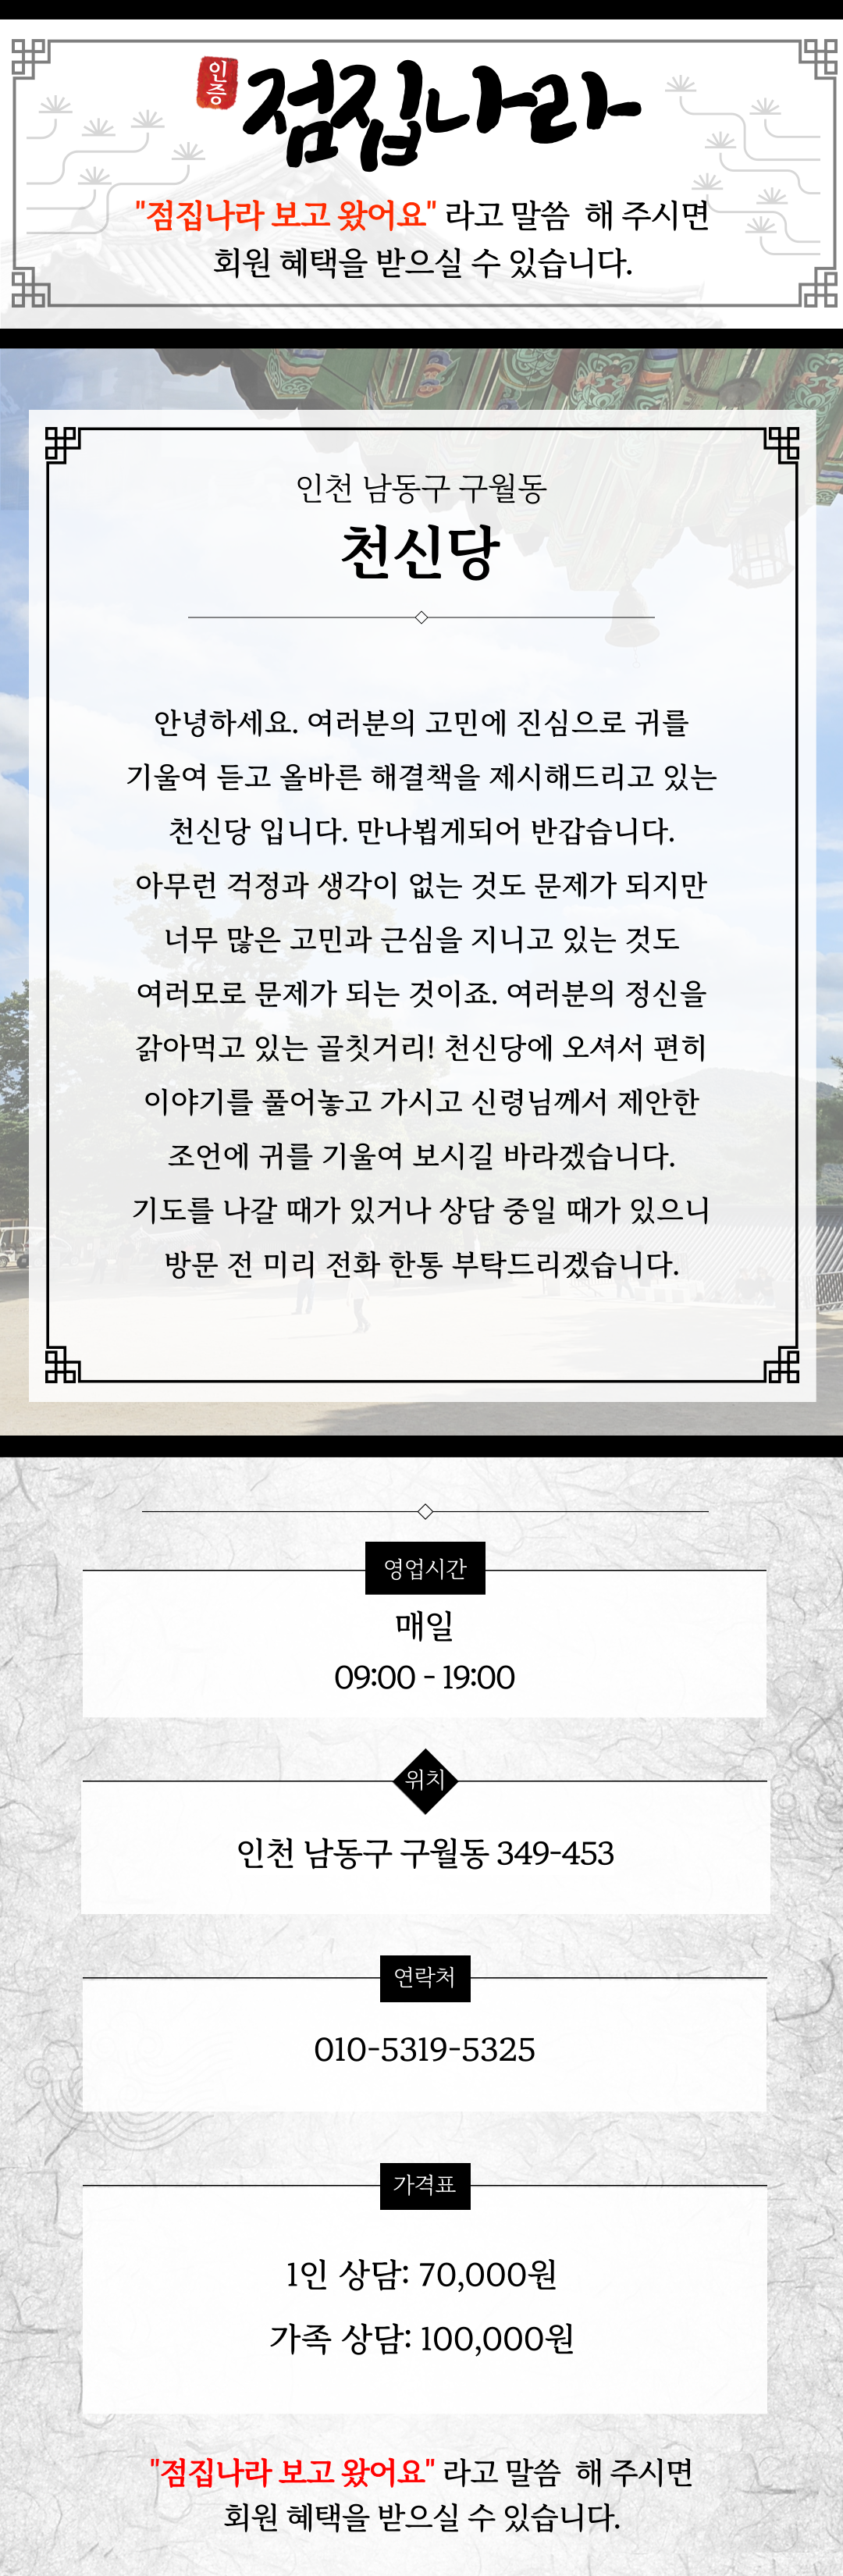 인천 천신당 정보소개